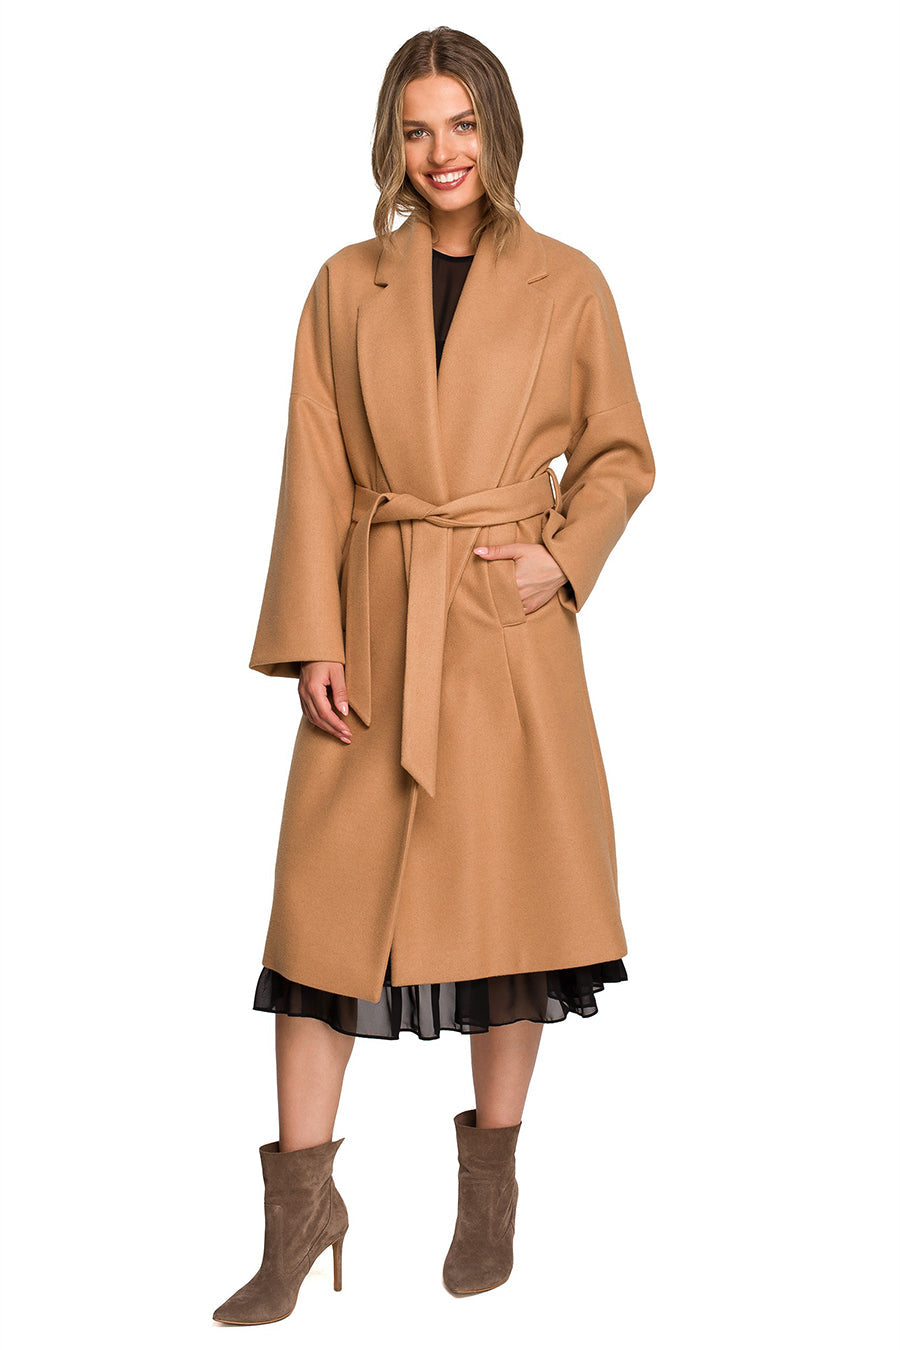 Γυναικείο παλτό Iphigenia, Μπεζ 1